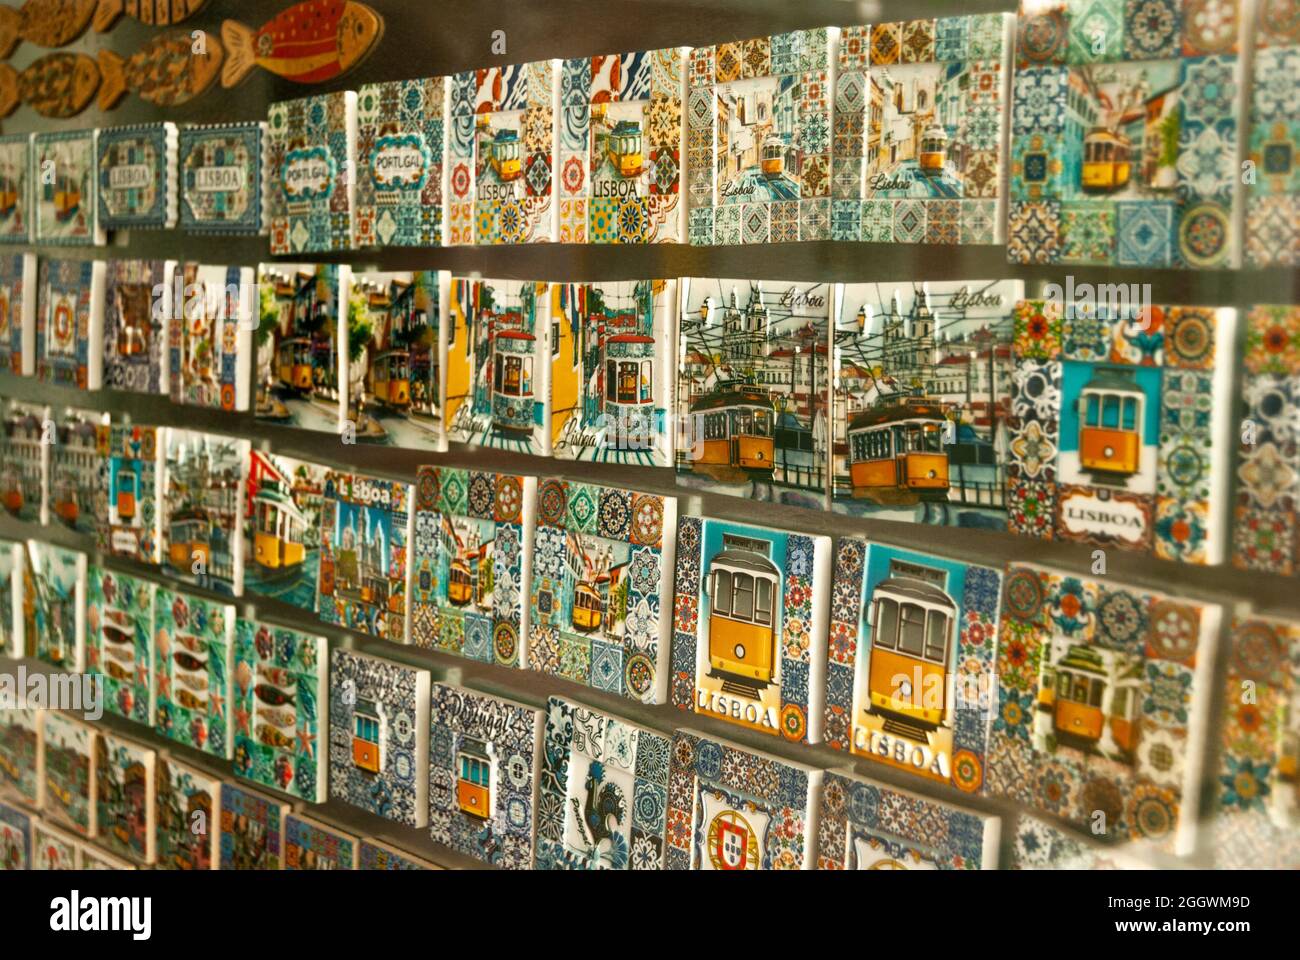 Eine Sammlung von bunten Magneten mit berühmten gelben Trolleys Text Lissabon Souvenirstand in einem Geschäft Stockfoto